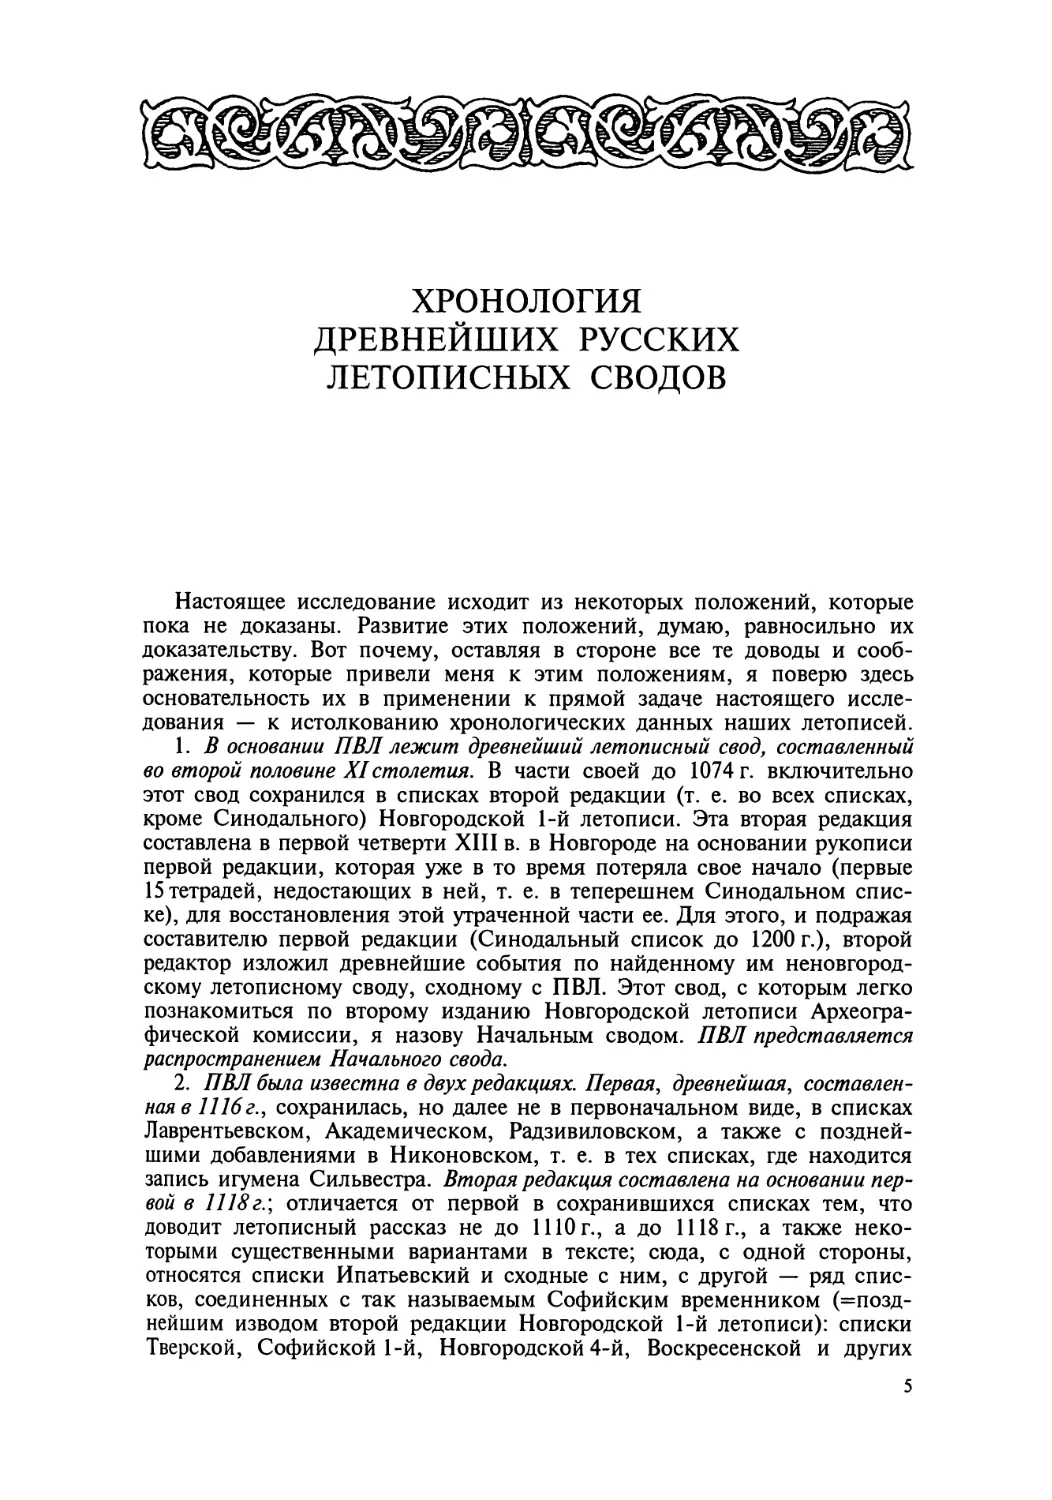 Хронология древнейших русских летописных сводов